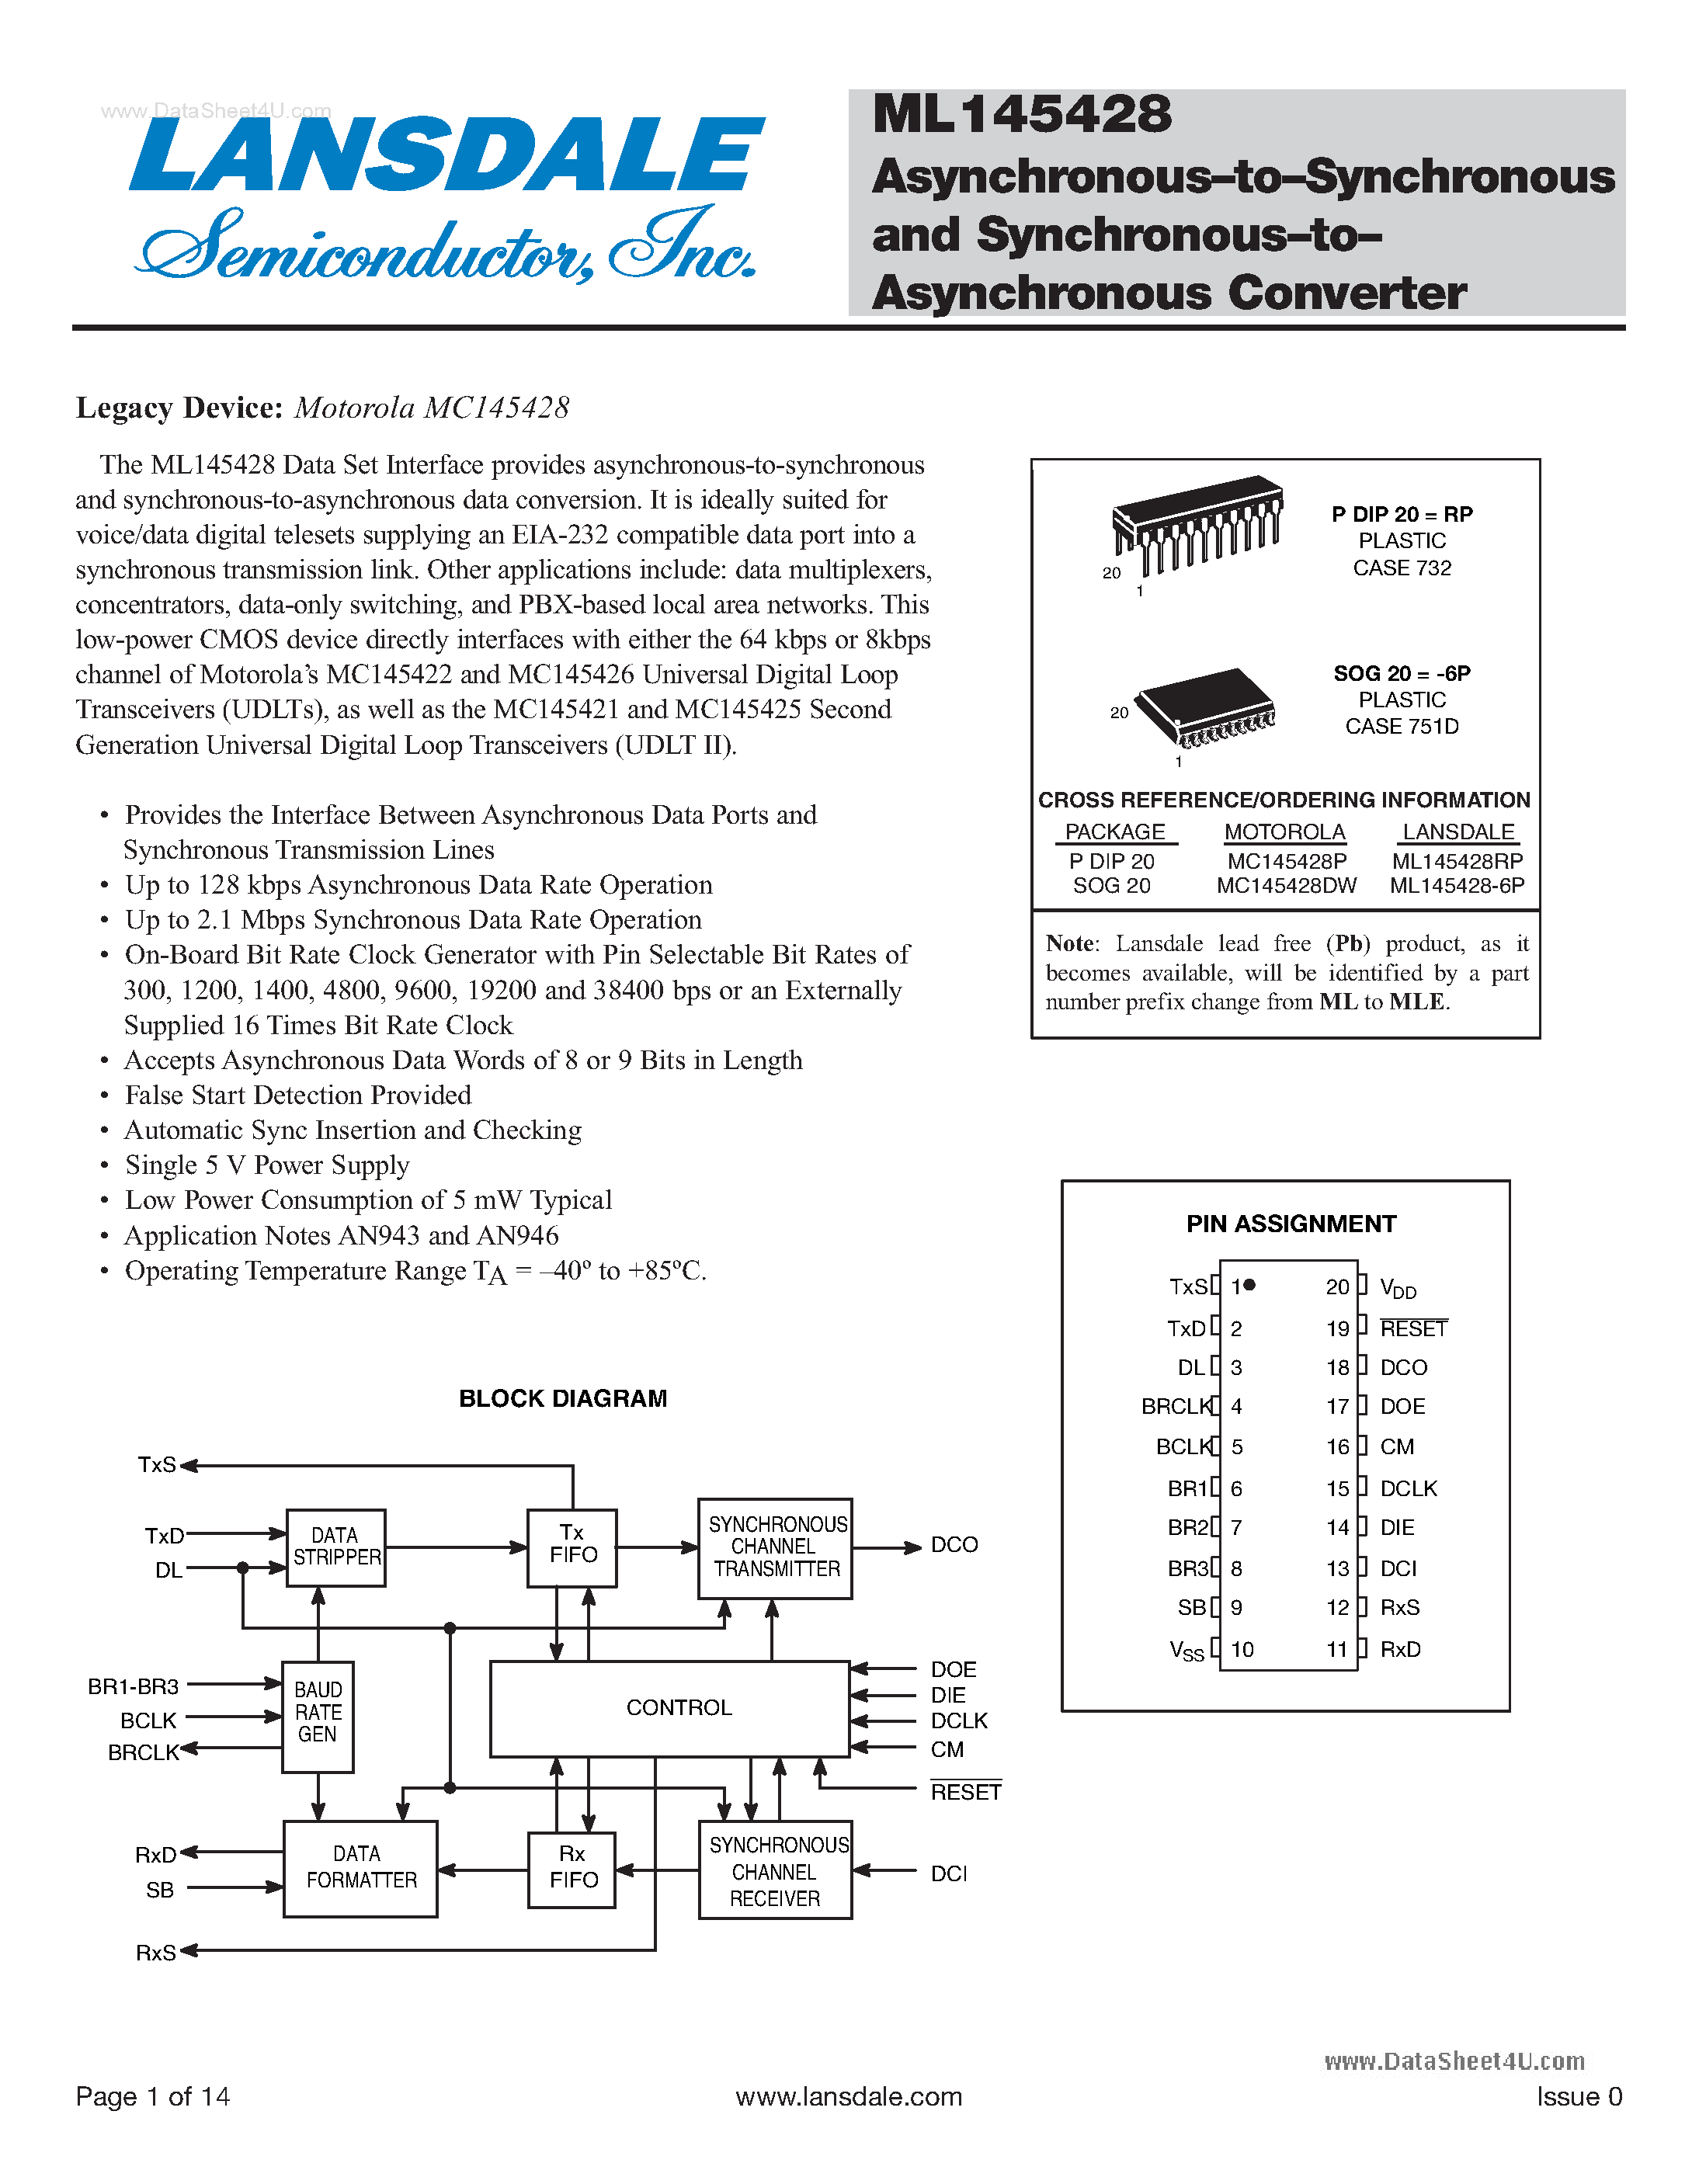 Datasheet ML145428 - Asynchronous-to-Synchronous and Synchronous-to-Asynchronous Converter page 1